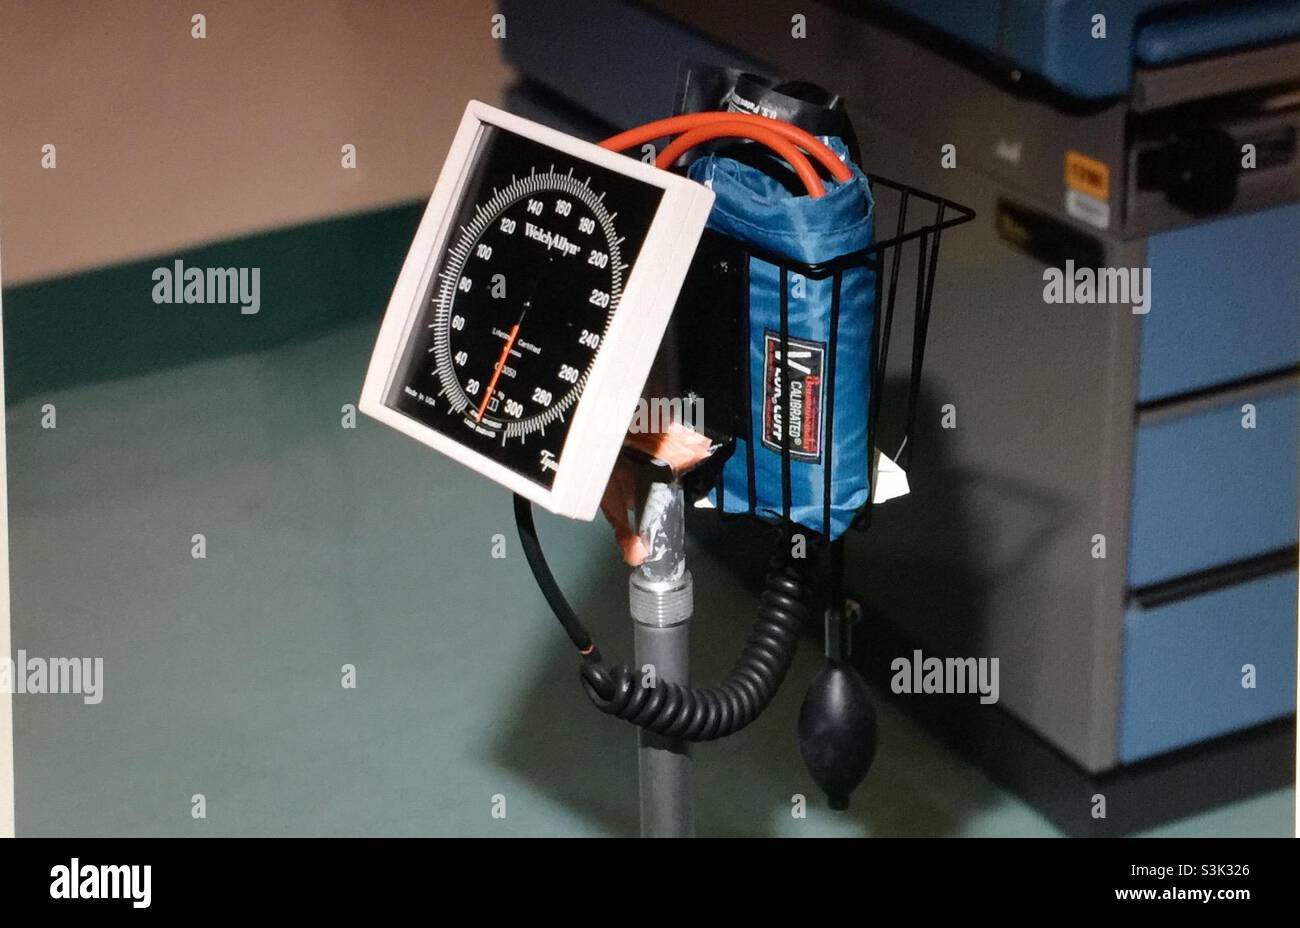 Macchina per la pressione sanguigna in una clinica Foto stock - Alamy